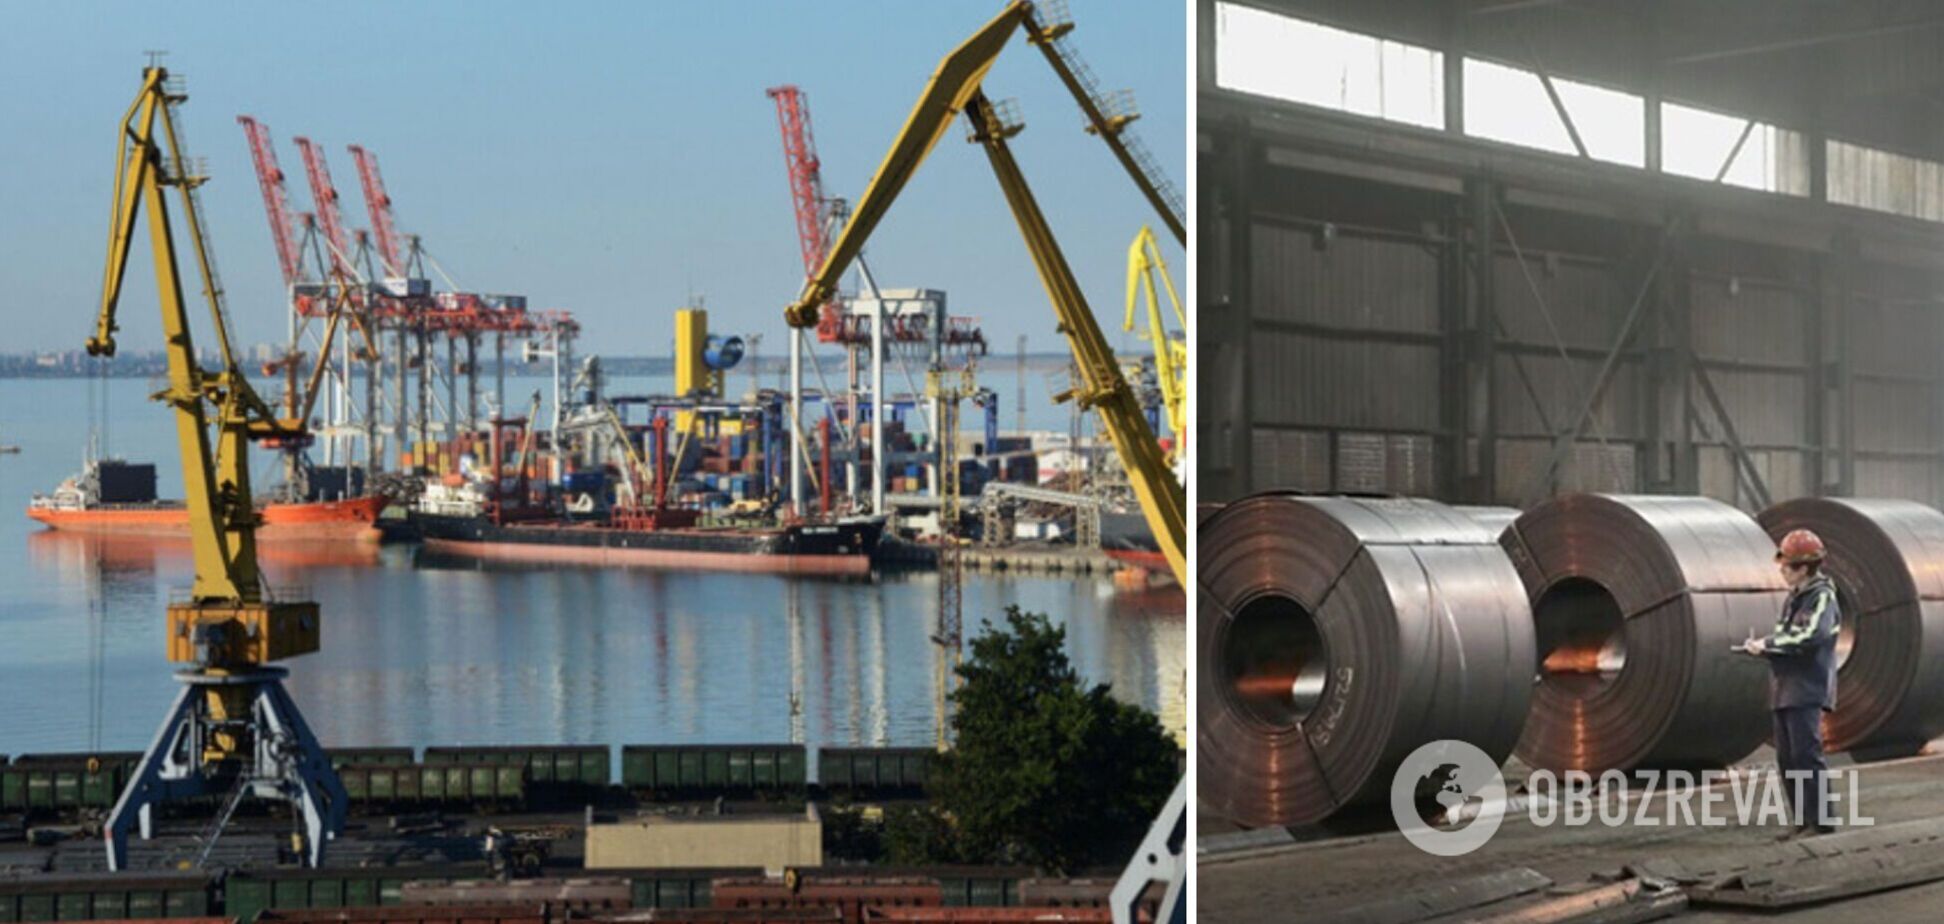 Разблокировка портов для экспорта металла позволит стабилизировать бюджет, – нардеп